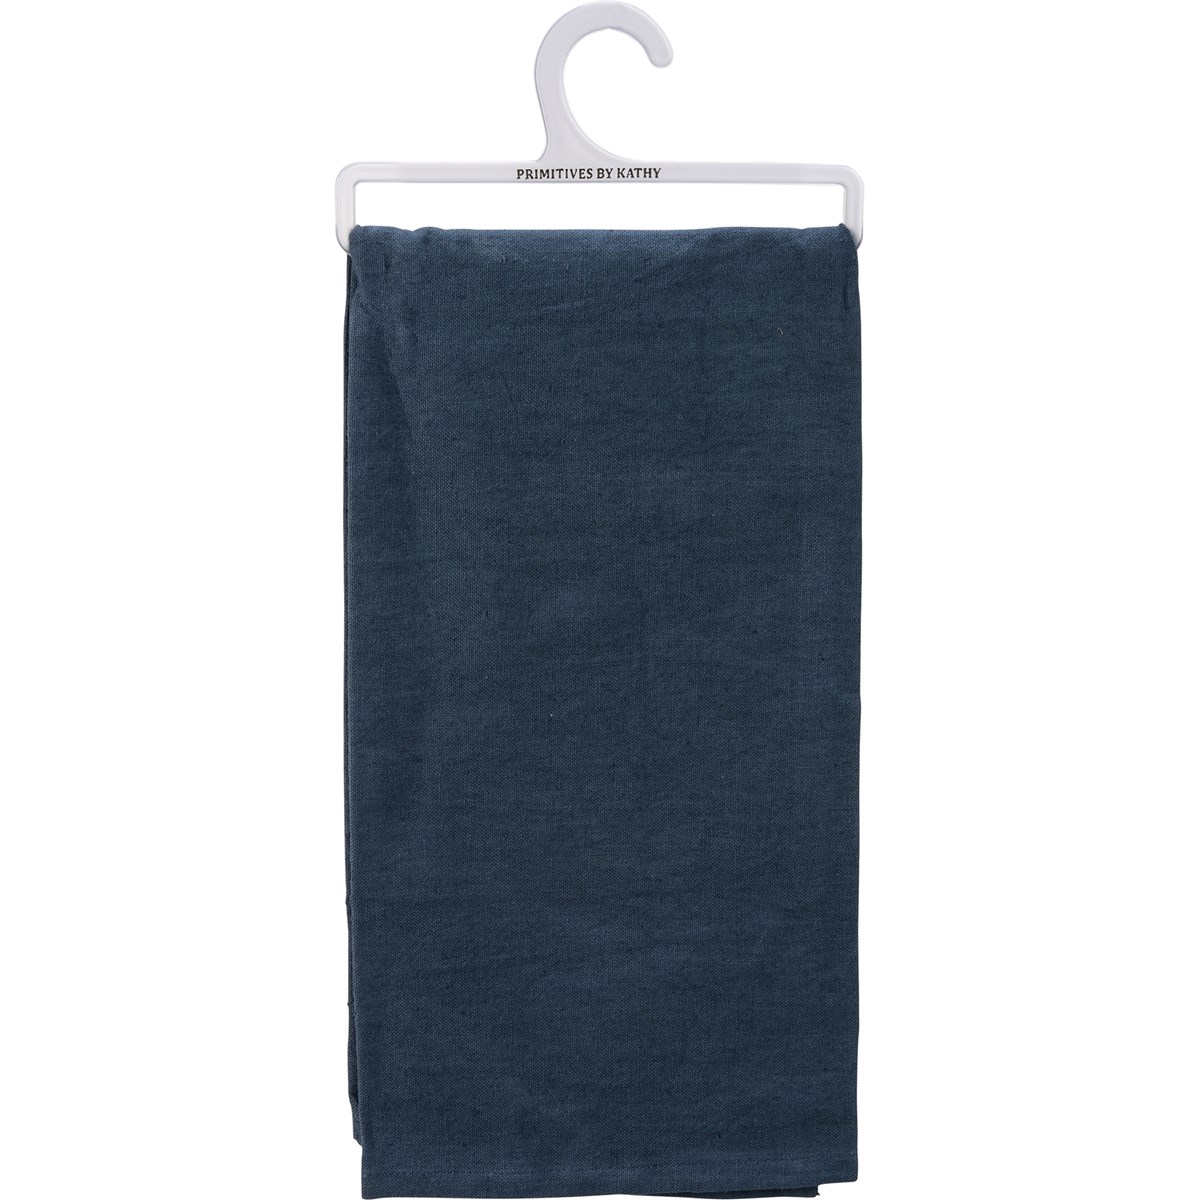 It's Ok To Go Through Phases Kitchen Towel - Cotton, Linen